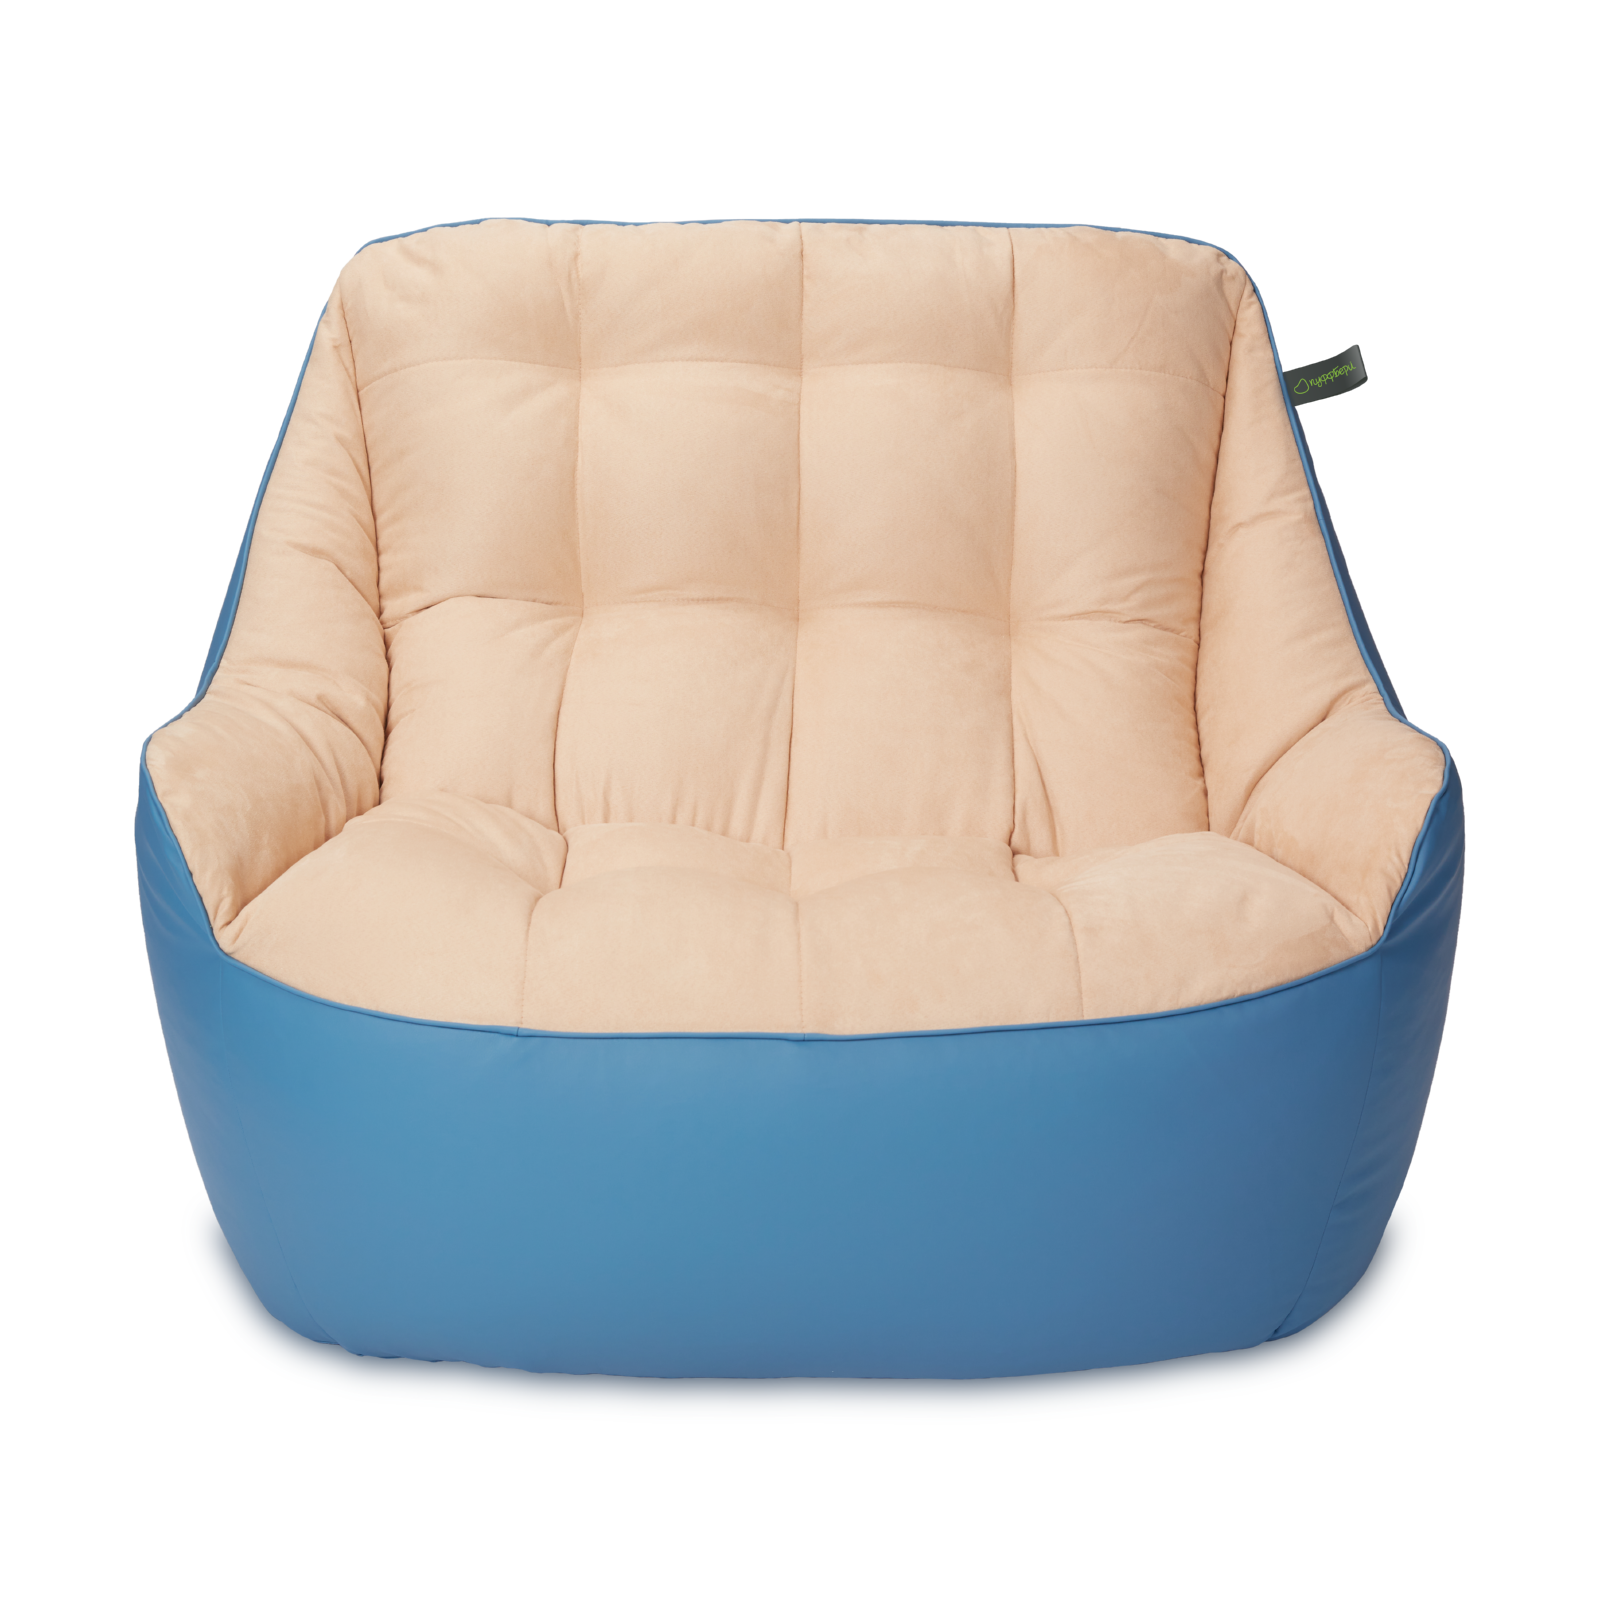 Кресло мешок «Диван Босс», эко-кожа и замша, Синий и бежевый